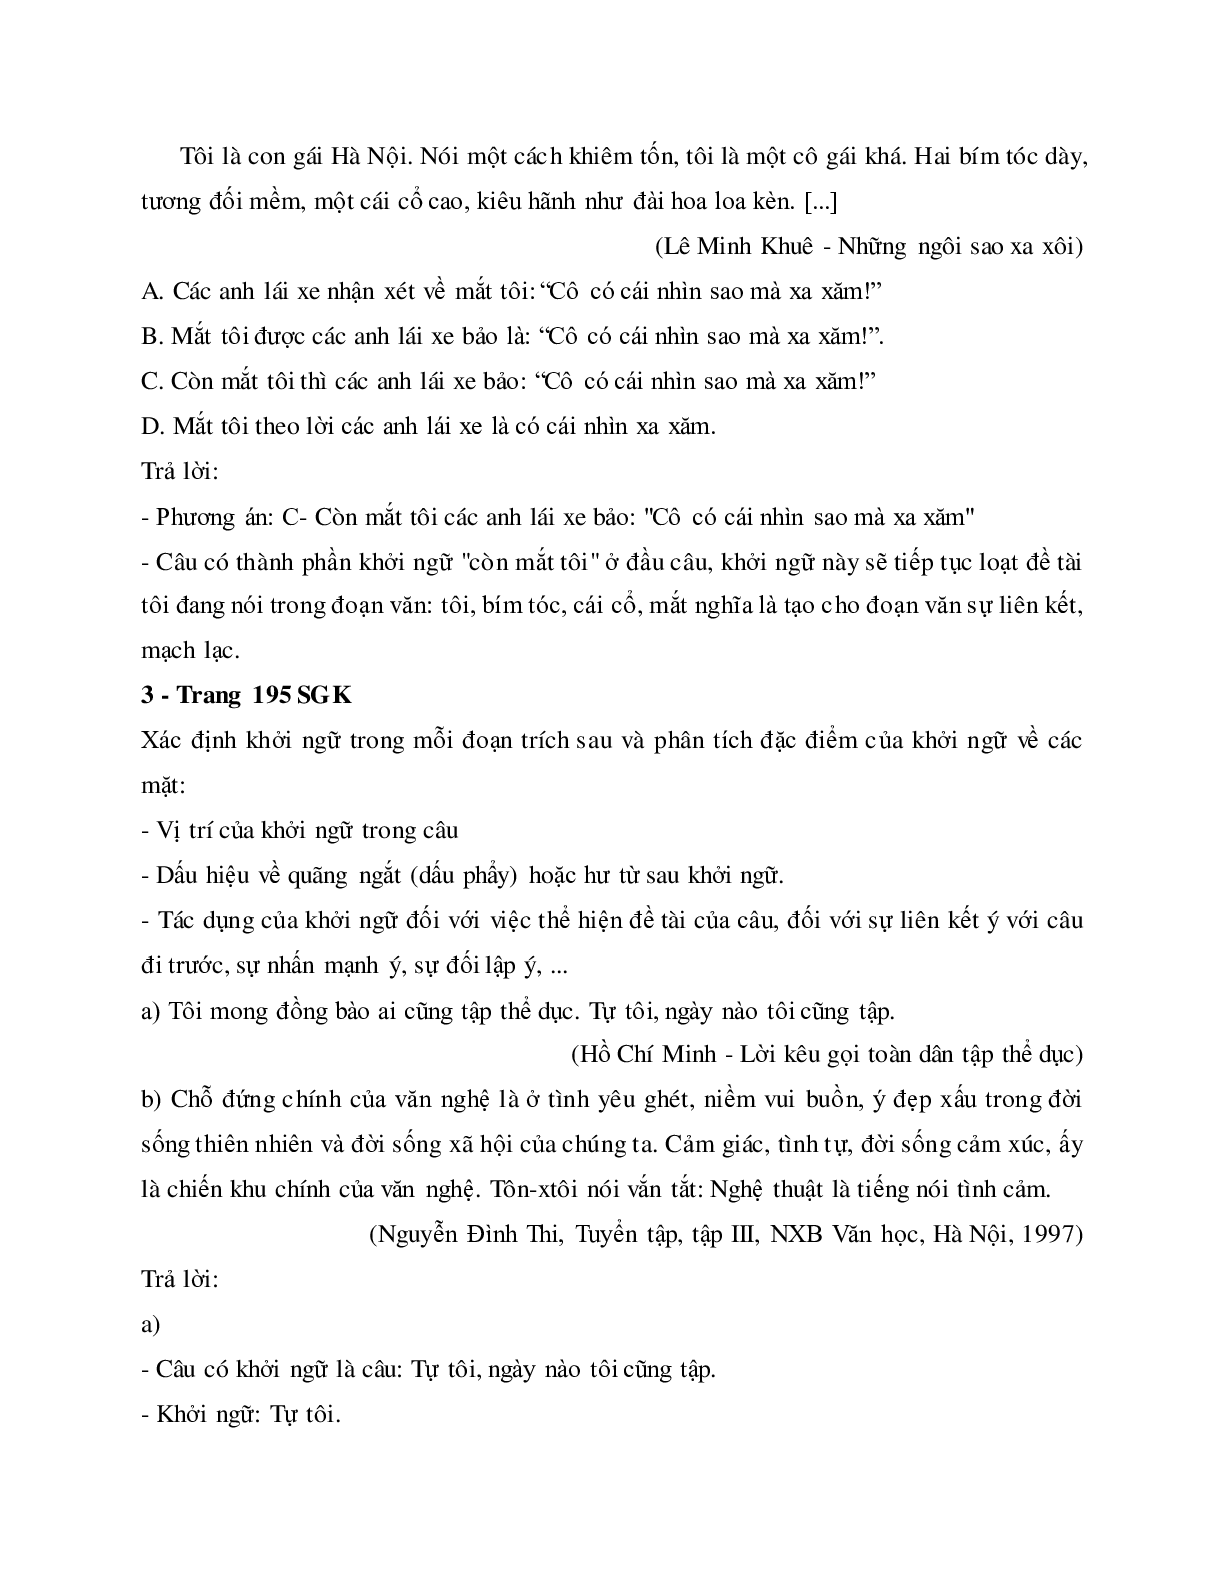 Soạn bài Thực hành về sử dụng một số kiểu câu trong văn bản - ngắn nhất Soạn văn 11 (trang 6)